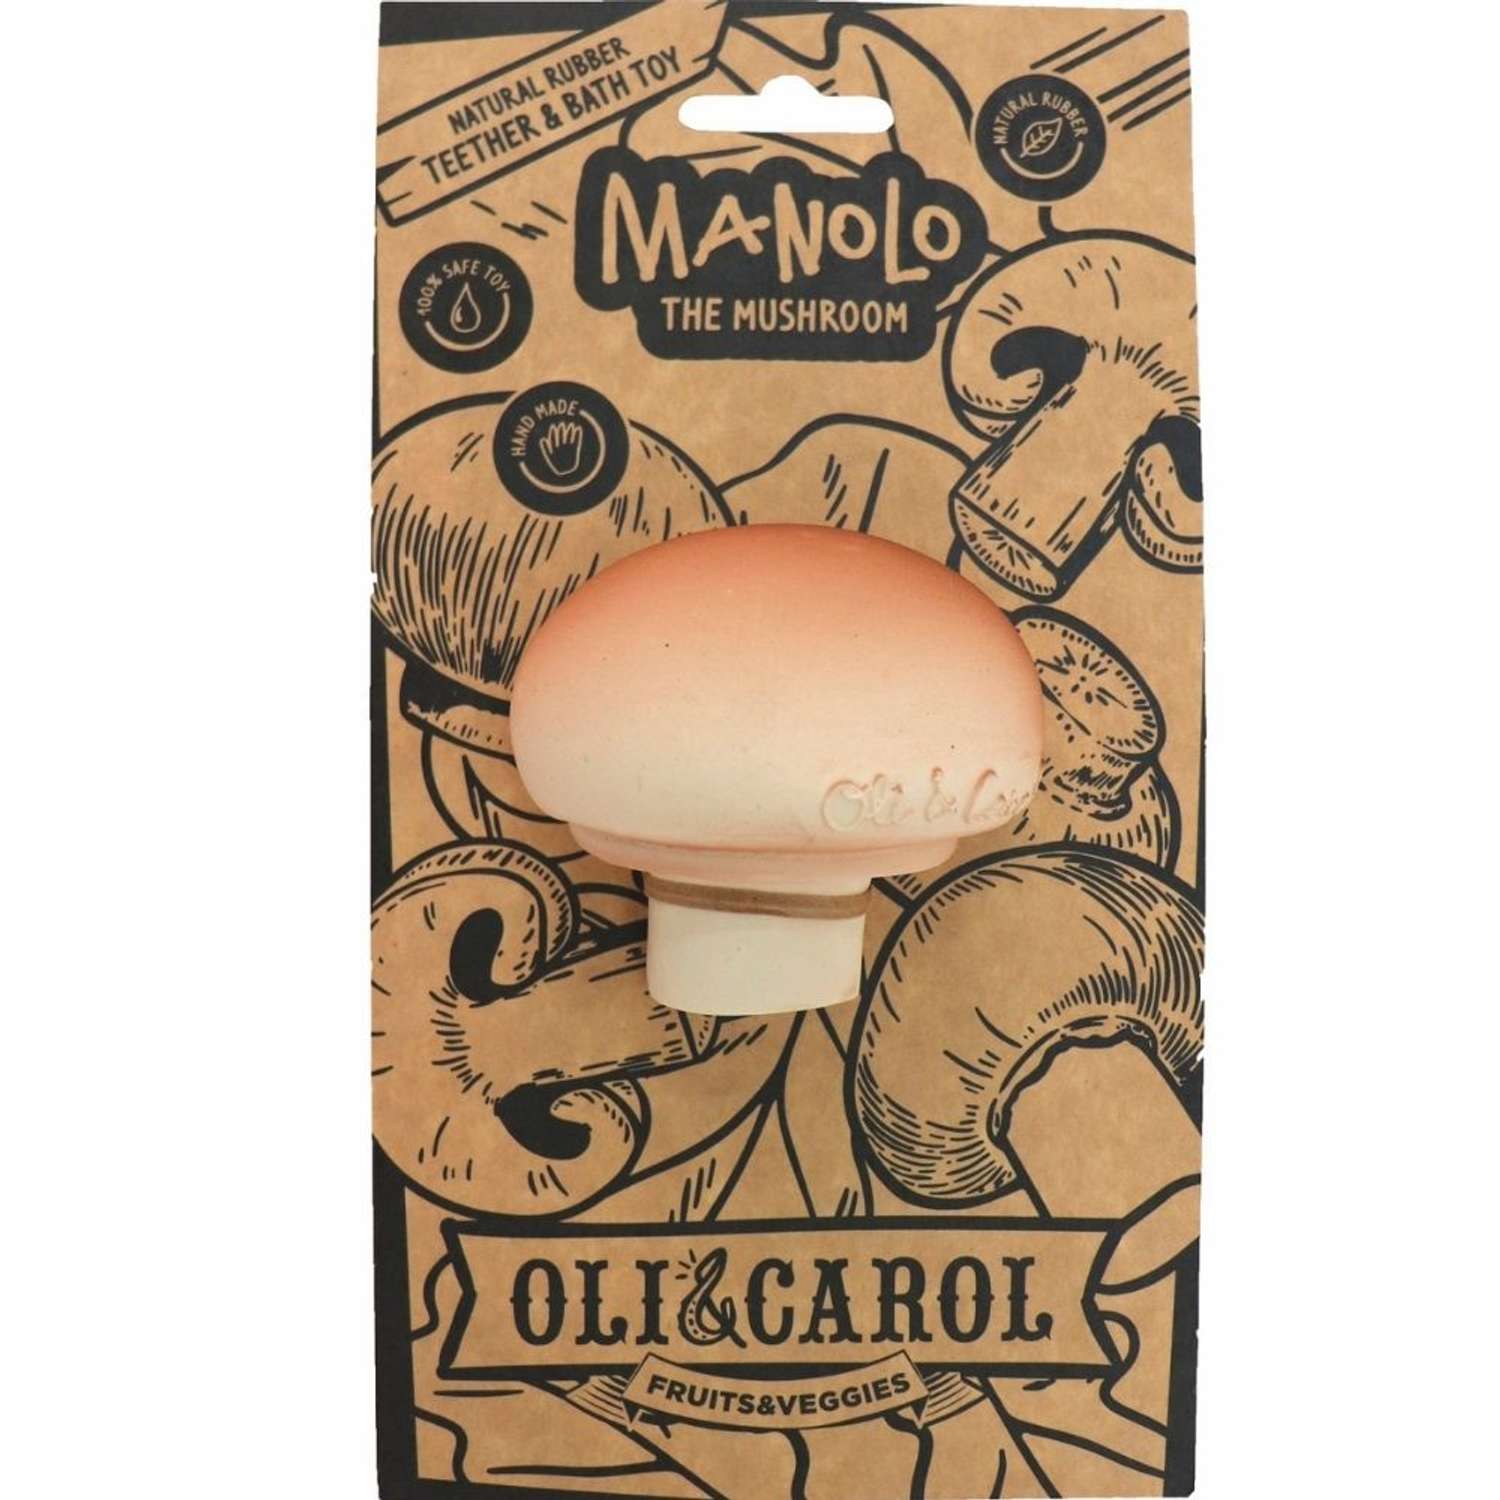 Прорезыватель грызунок OLI and CAROL Manolo The Mushroom из натурального каучука - фото 2